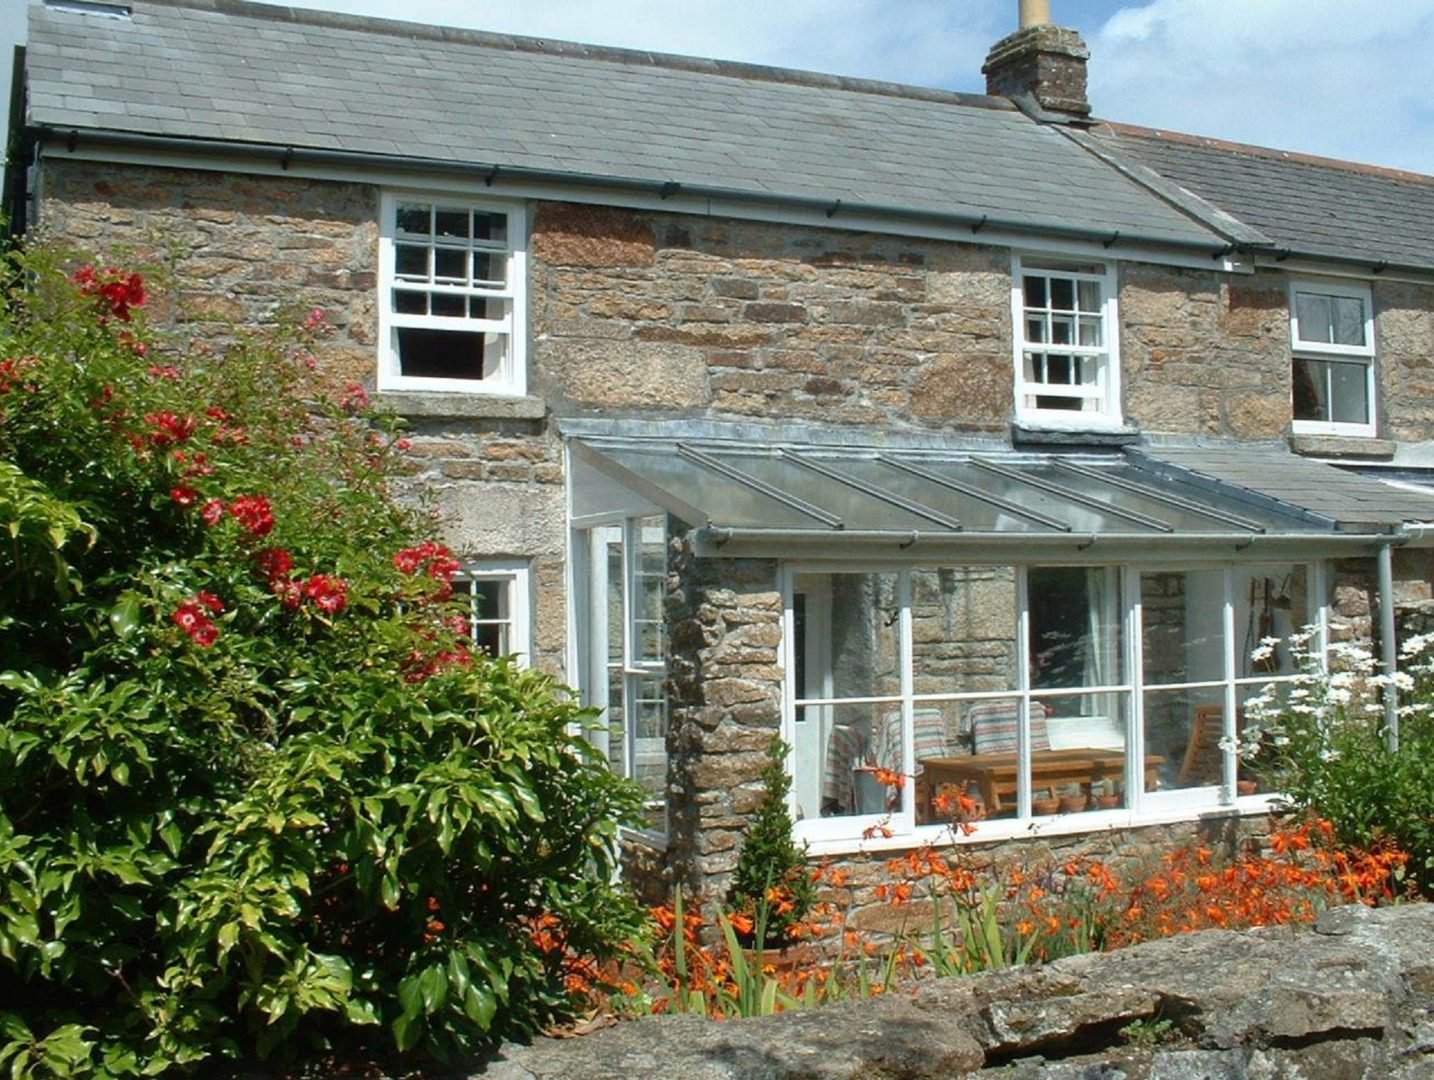 Tivoli Cottage frontage from Stylish Cornish Cottages